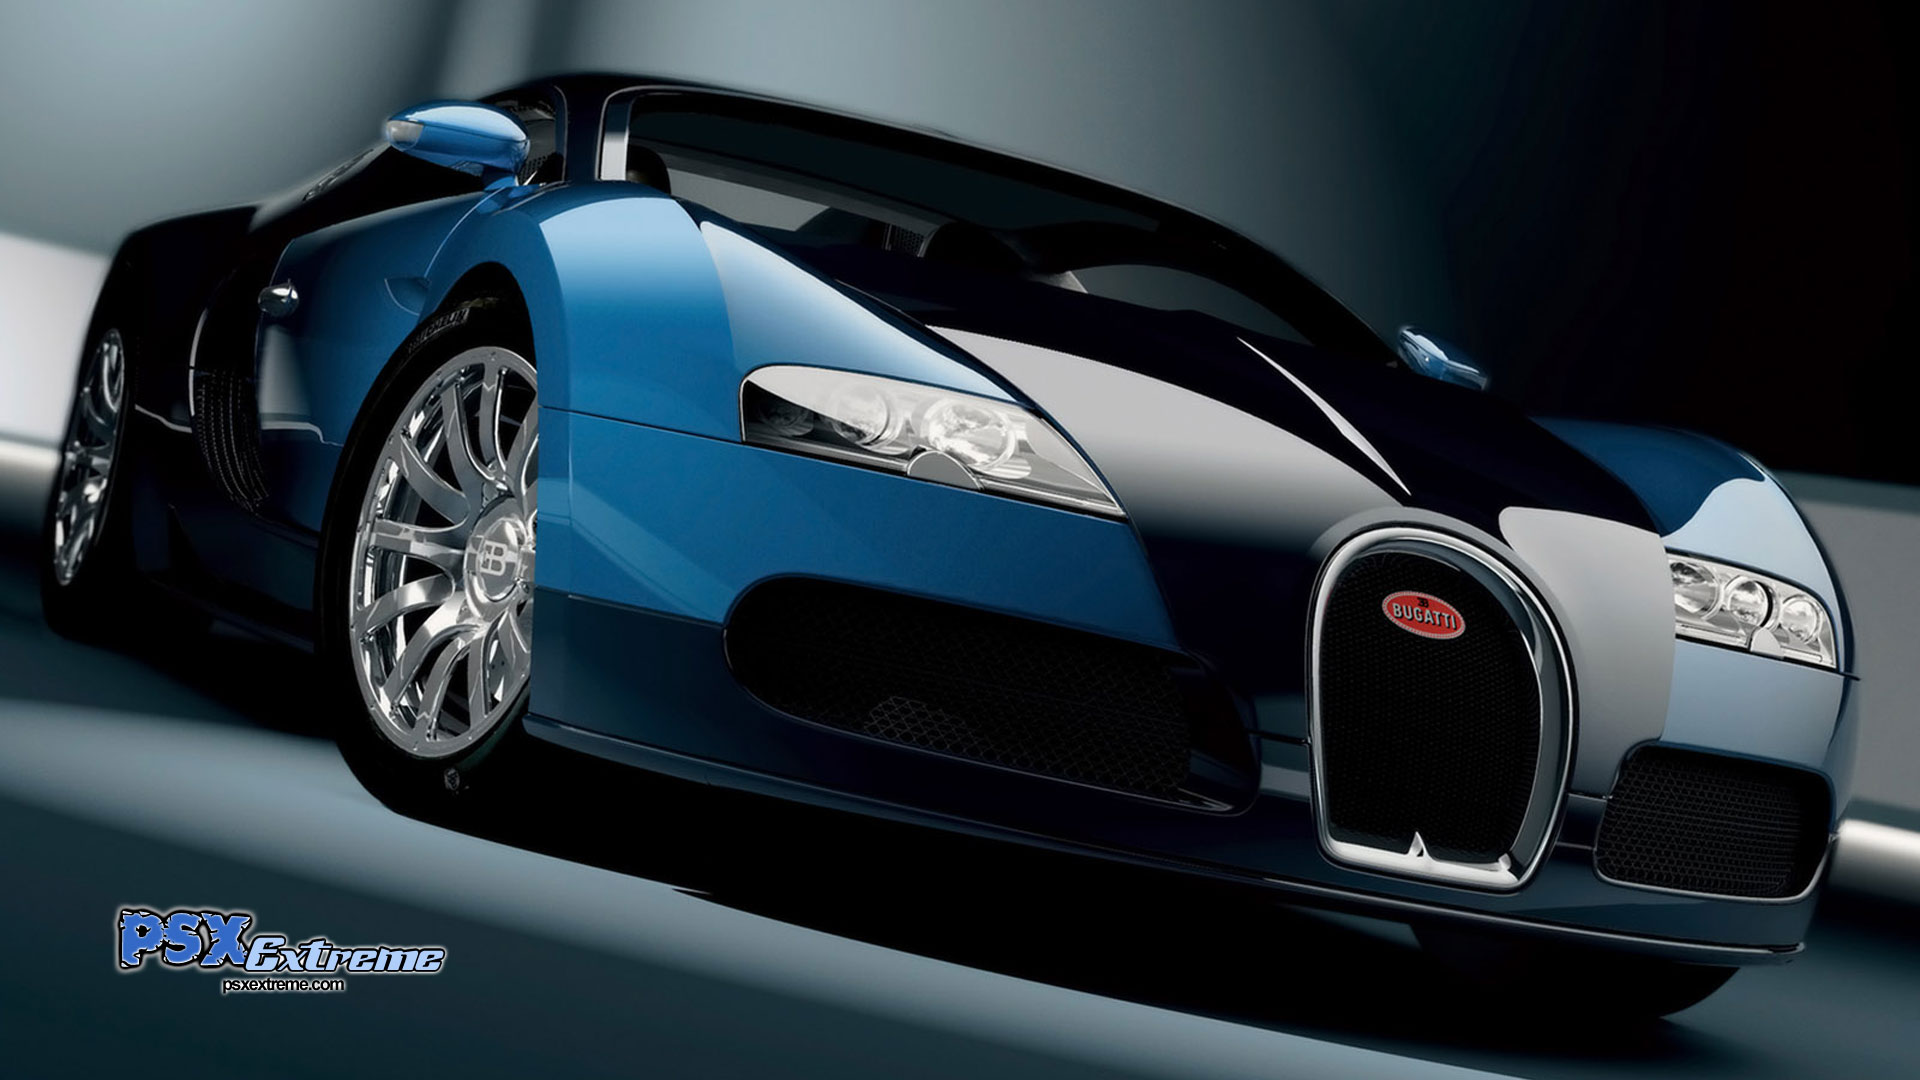 Bugatti Veyron V. 16.4